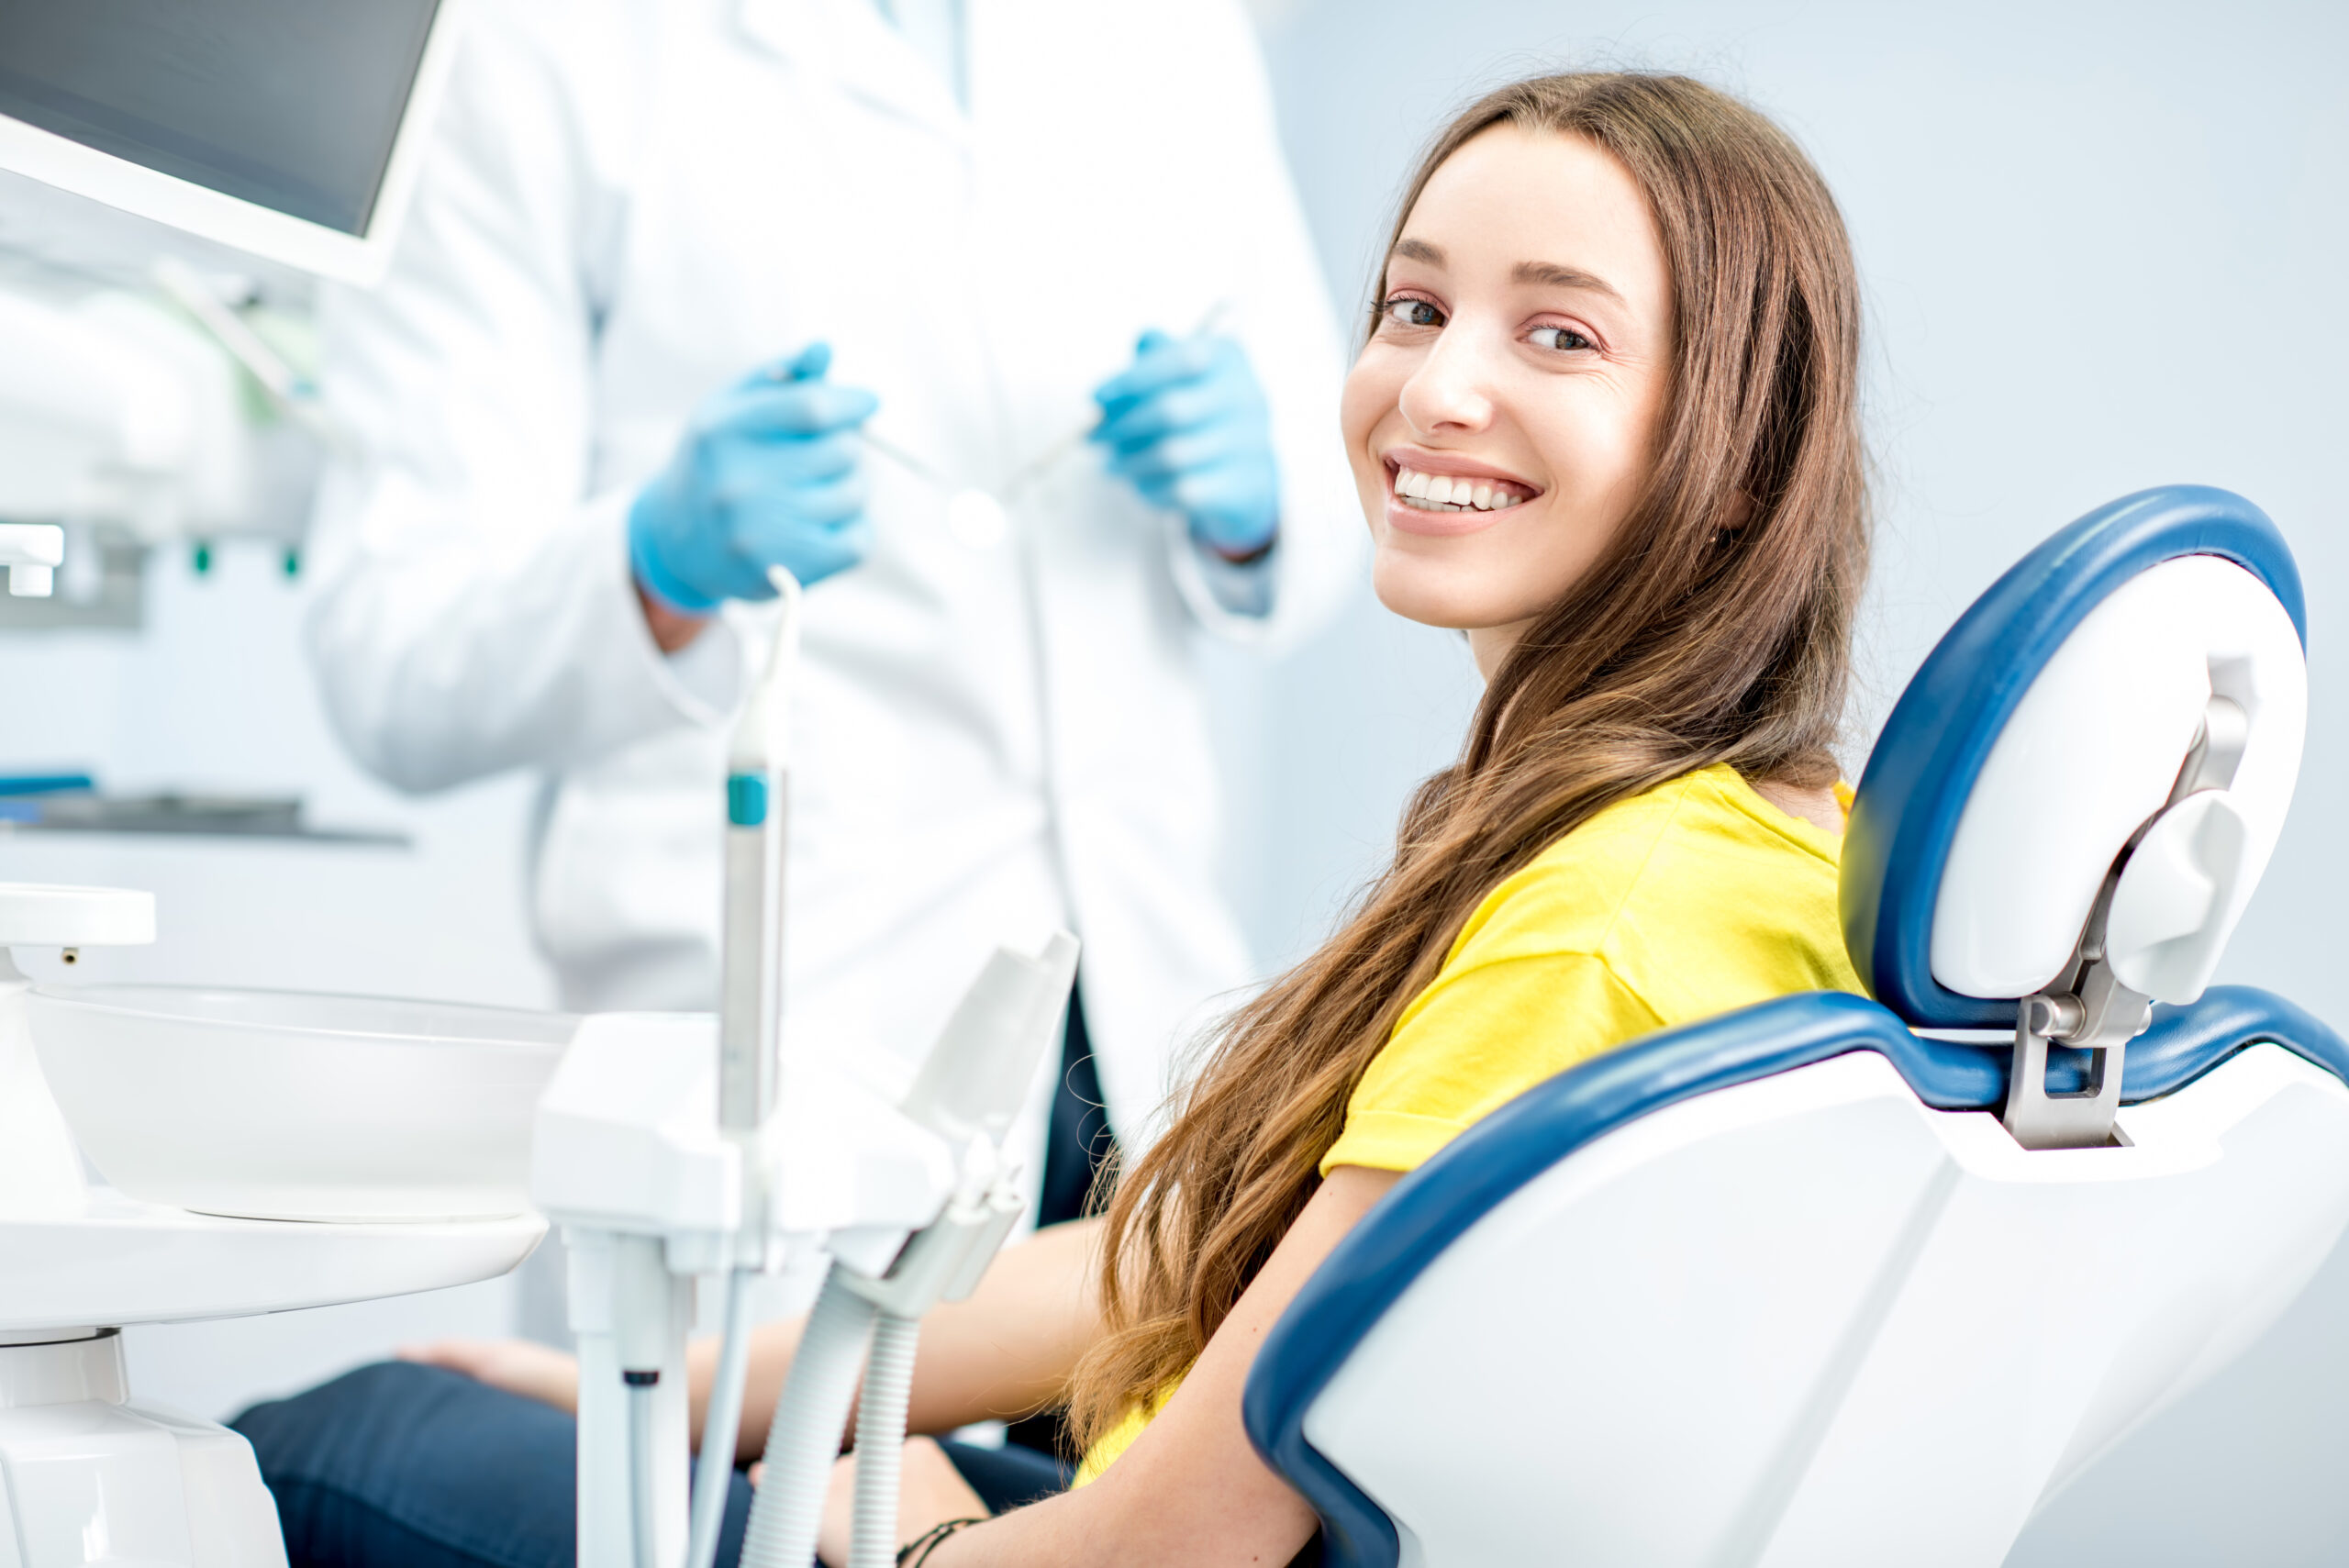 Zahnarztpatientin lächelt mit einem strahlenden Lächeln in die Kamera